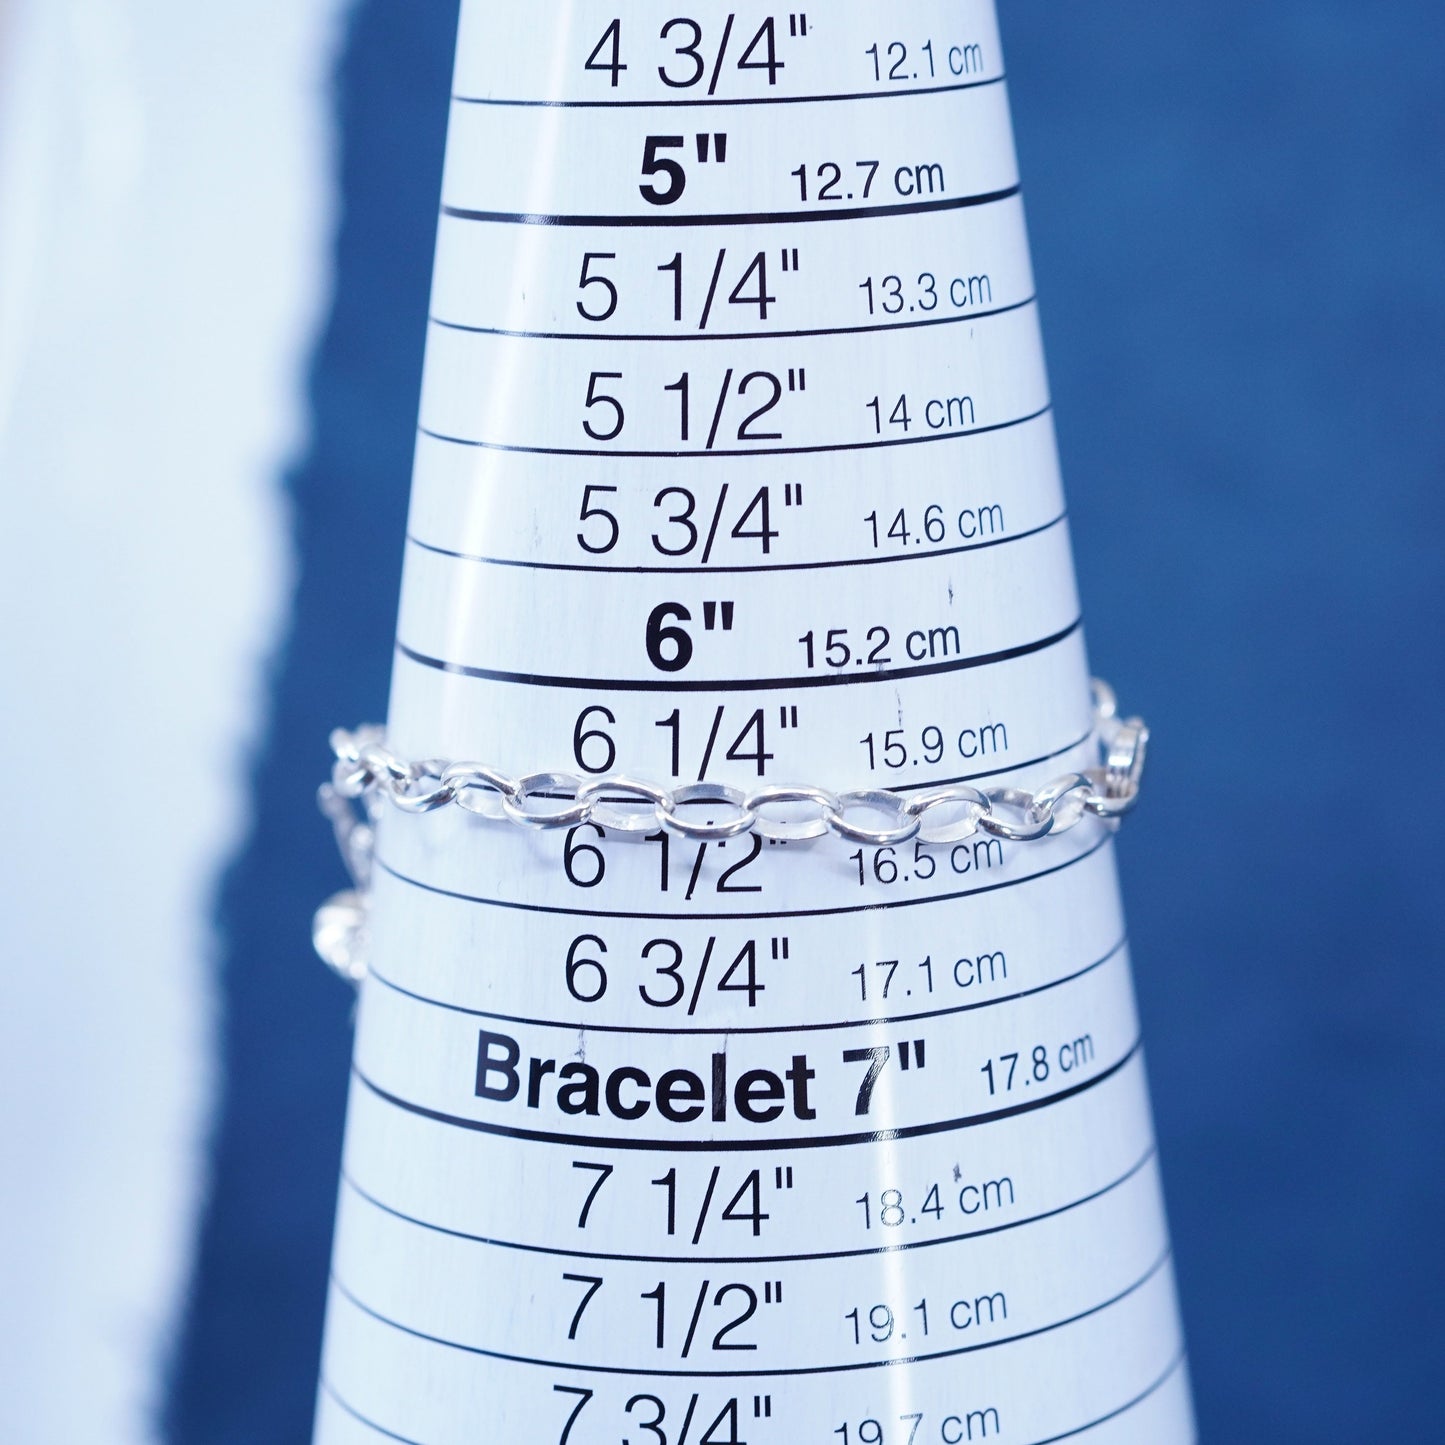 6.5”, Sterling silver handmade bracelet, 925 oval bracelet and ballet dancer